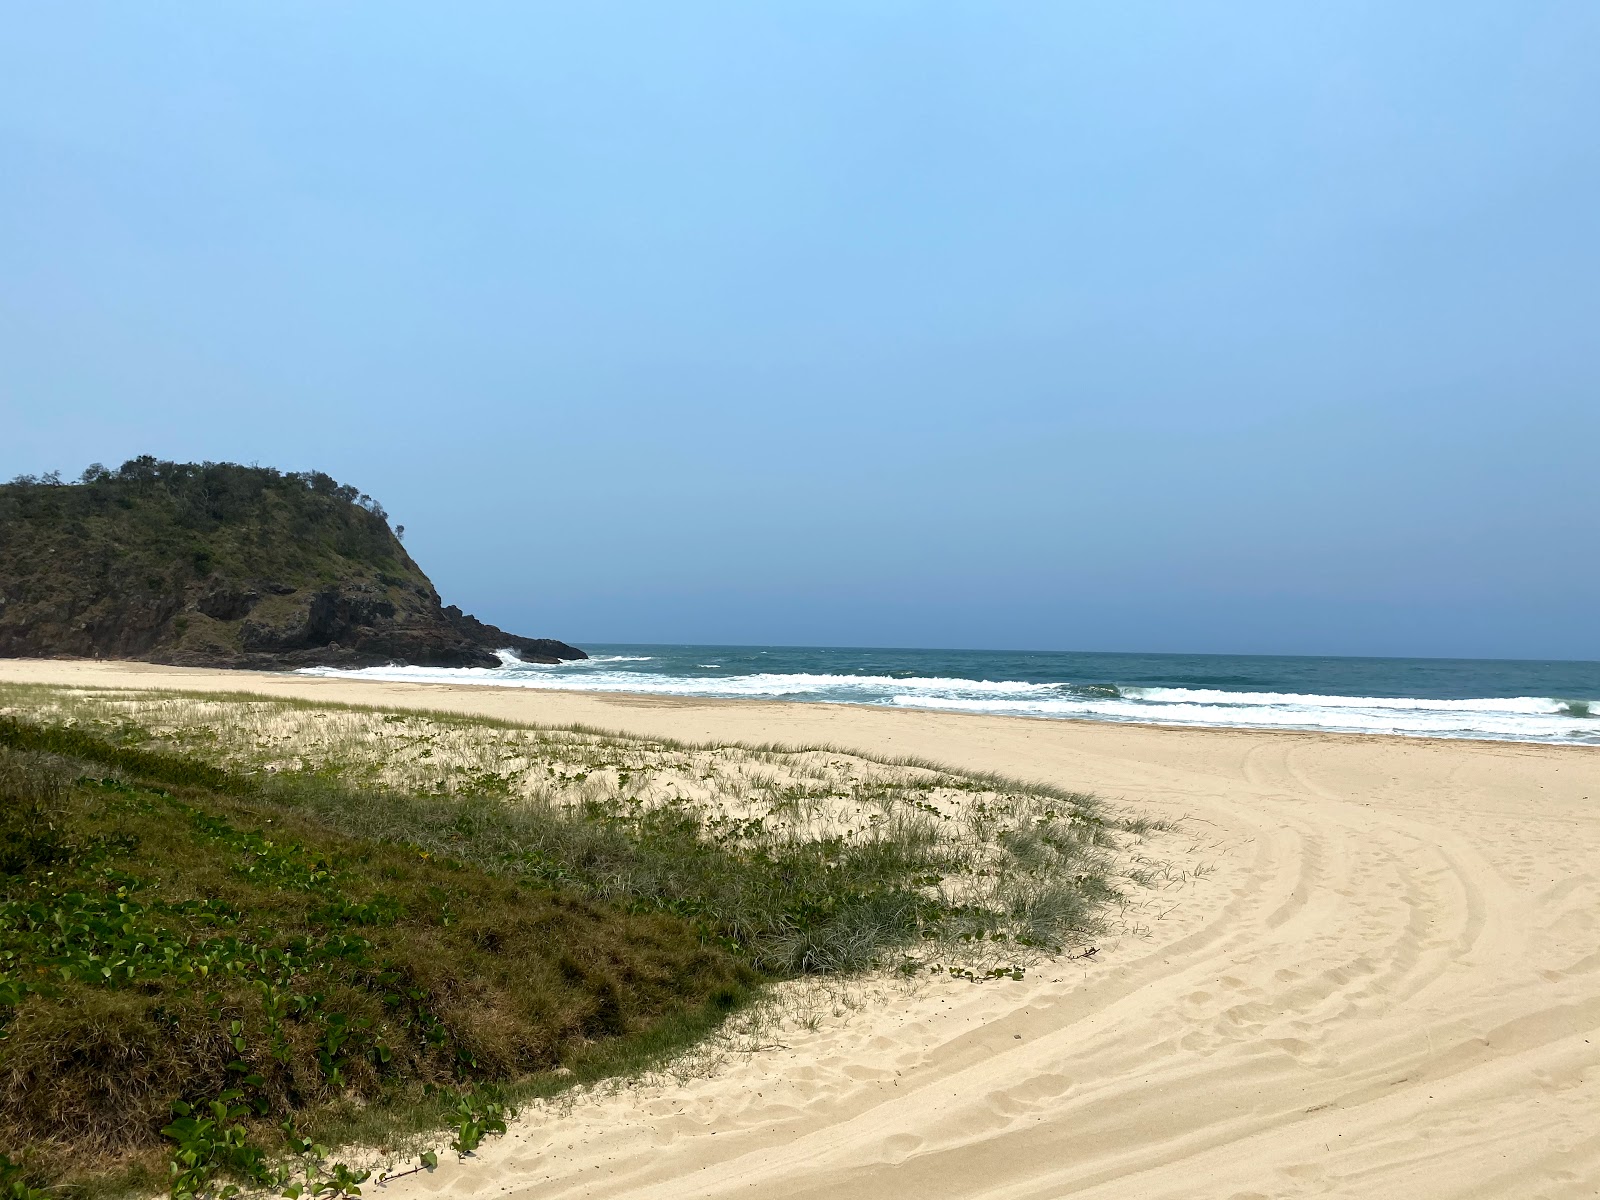 Foto de Off Leash Dog Beach con brillante arena fina superficie